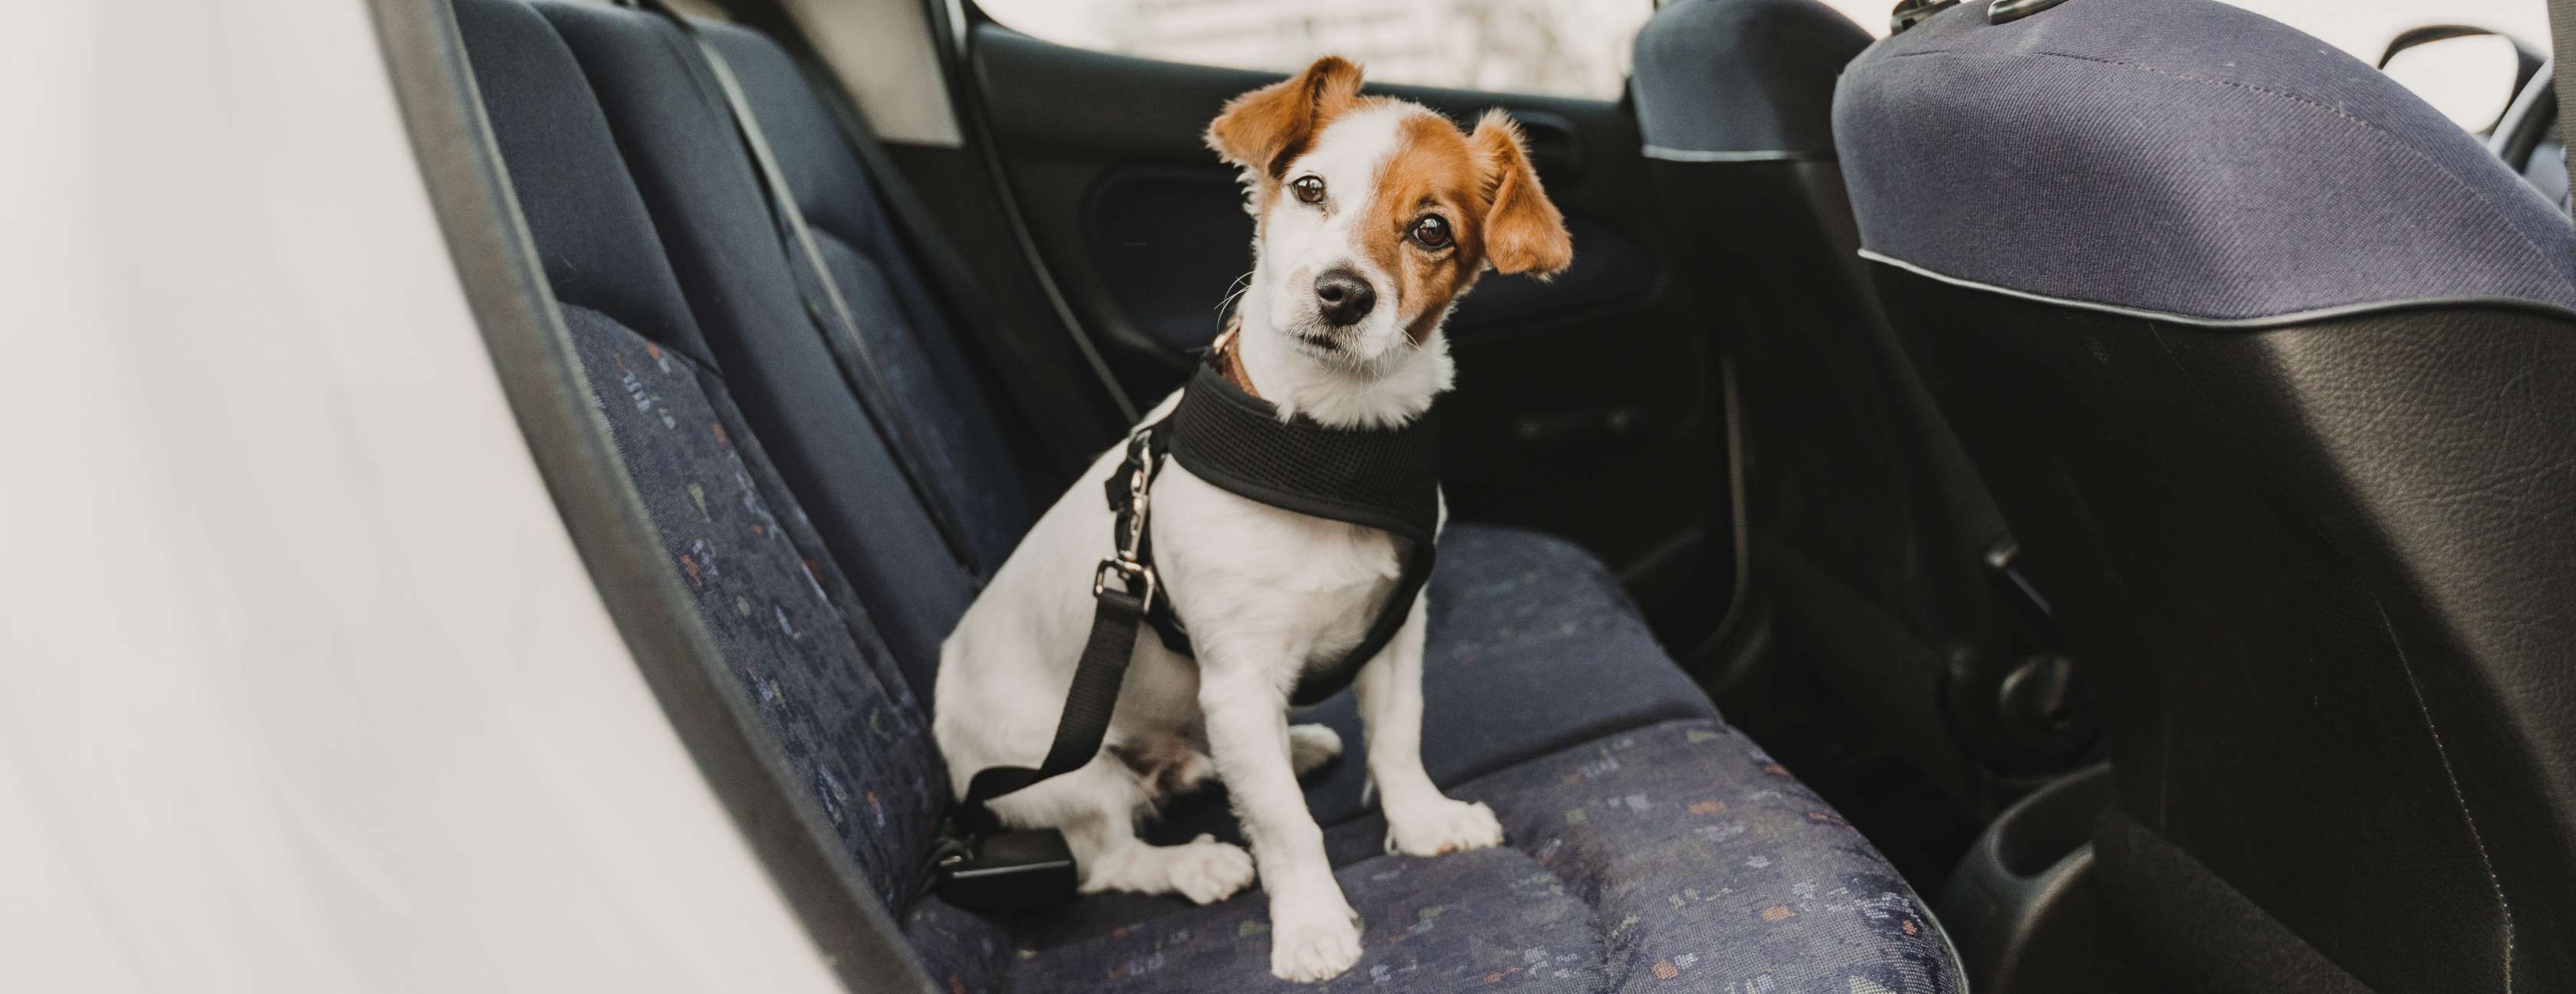 Kleiner weiß-brauner Terrier sitzt angeschnallt auf der Rückbank eines Autos